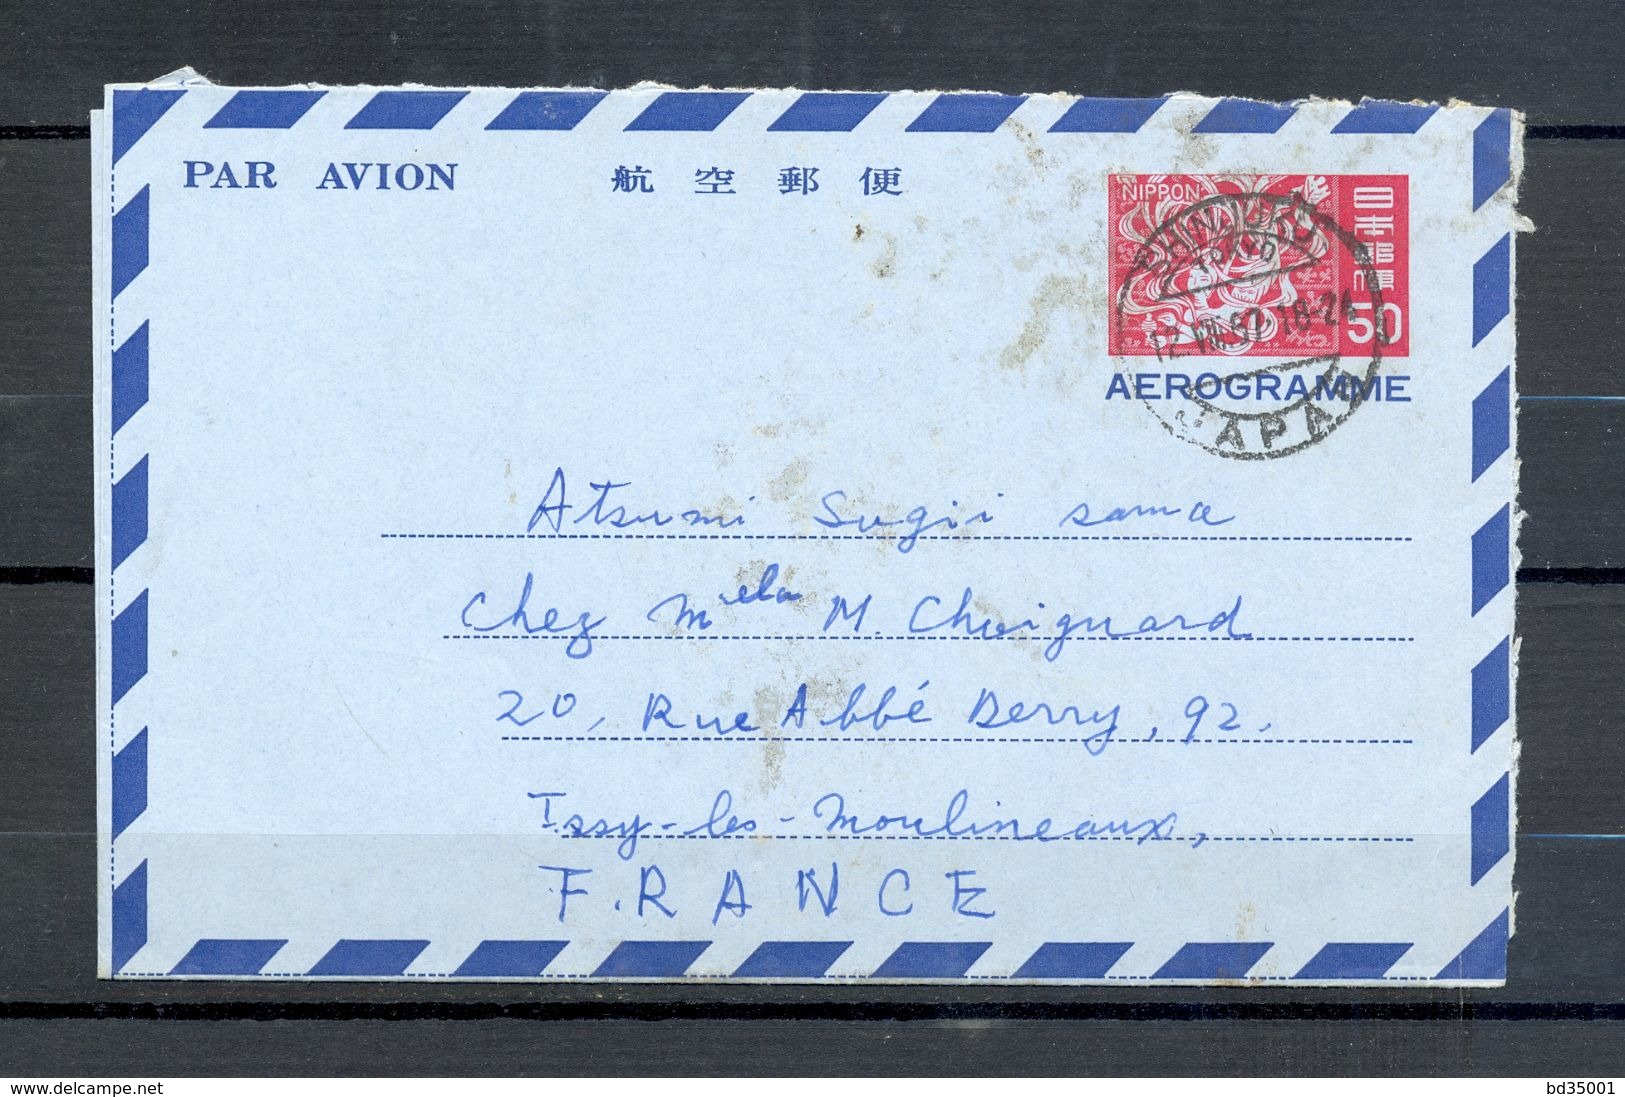 AEROGRAMME AIR LETTER PAR AVION - JAPON JAPAN - Tokyo Vers Issy Les Moulineaux - 1967 - (5) - Aerograms